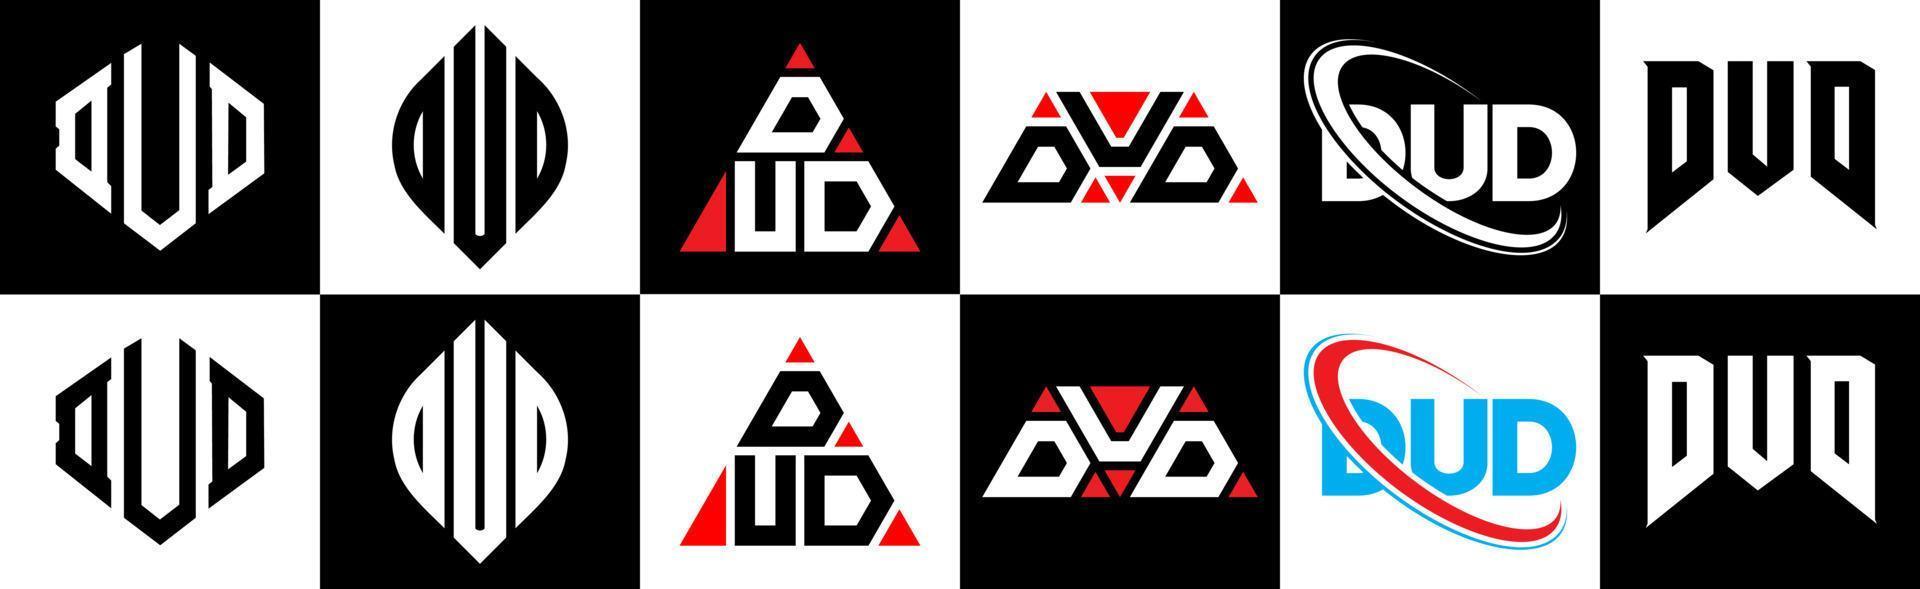 Dud-Buchstaben-Logo-Design in sechs Stilen. Blindpolygon, Kreis, Dreieck, Sechseck, flacher und einfacher Stil mit schwarz-weißem Buchstabenlogo in einer Zeichenfläche. Dud minimalistisches und klassisches Logo vektor